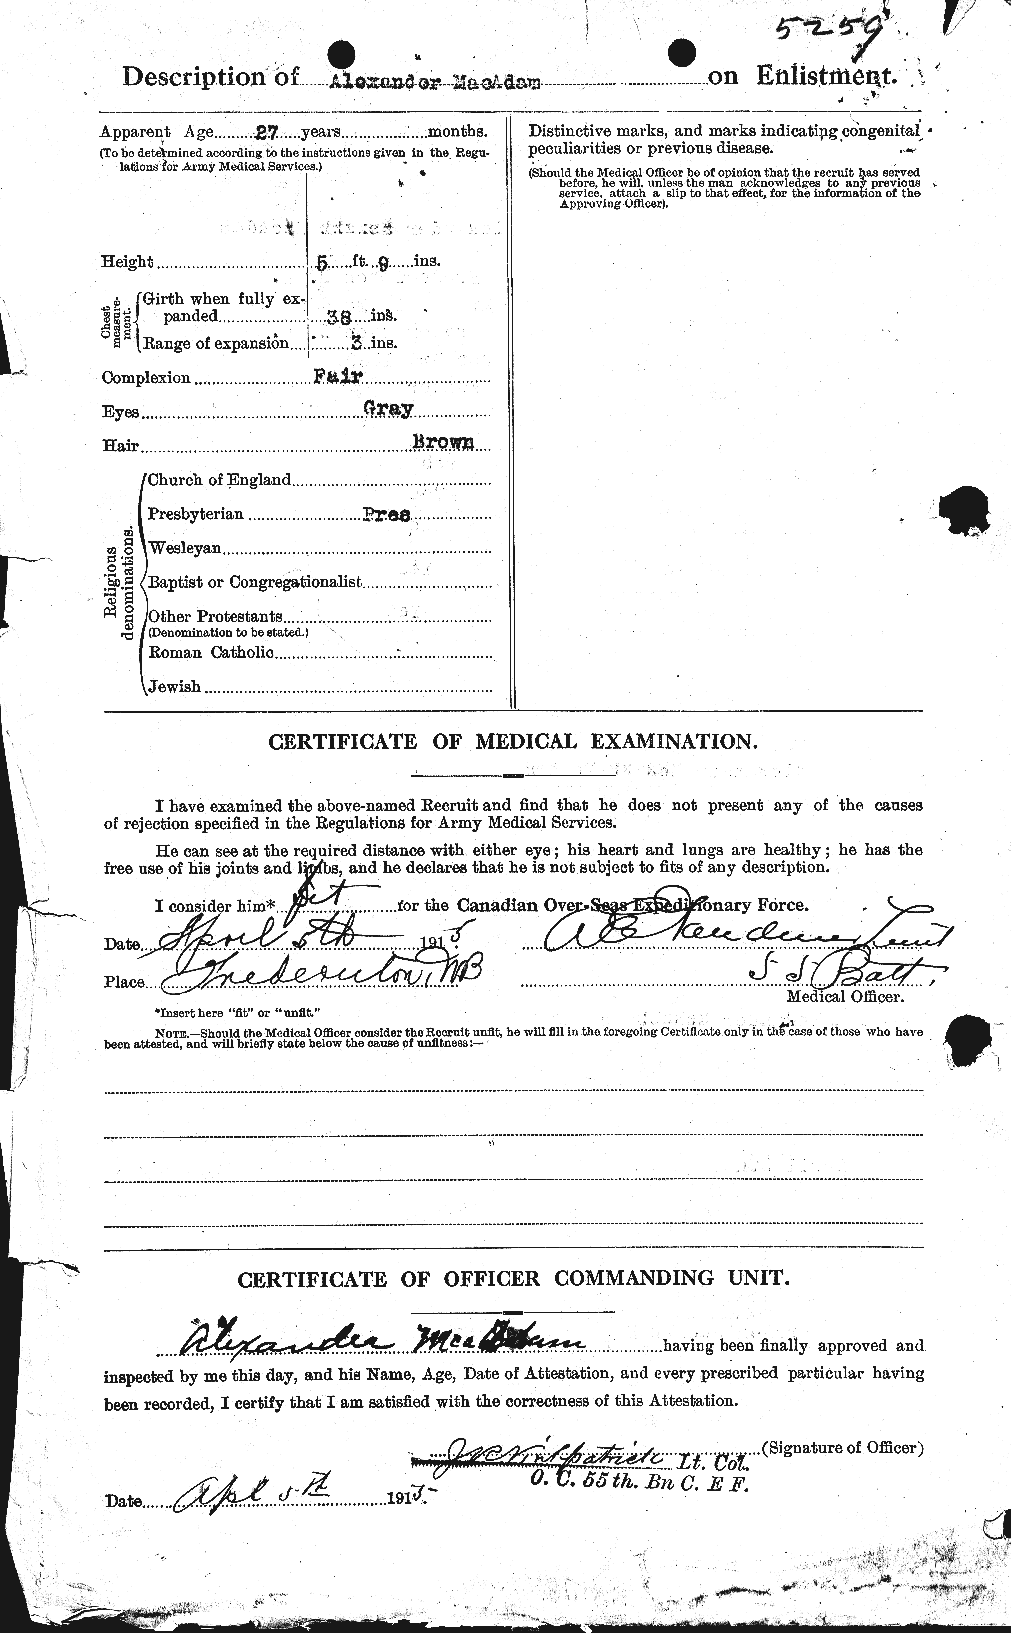 Dossiers du Personnel de la Première Guerre mondiale - CEC 130474b